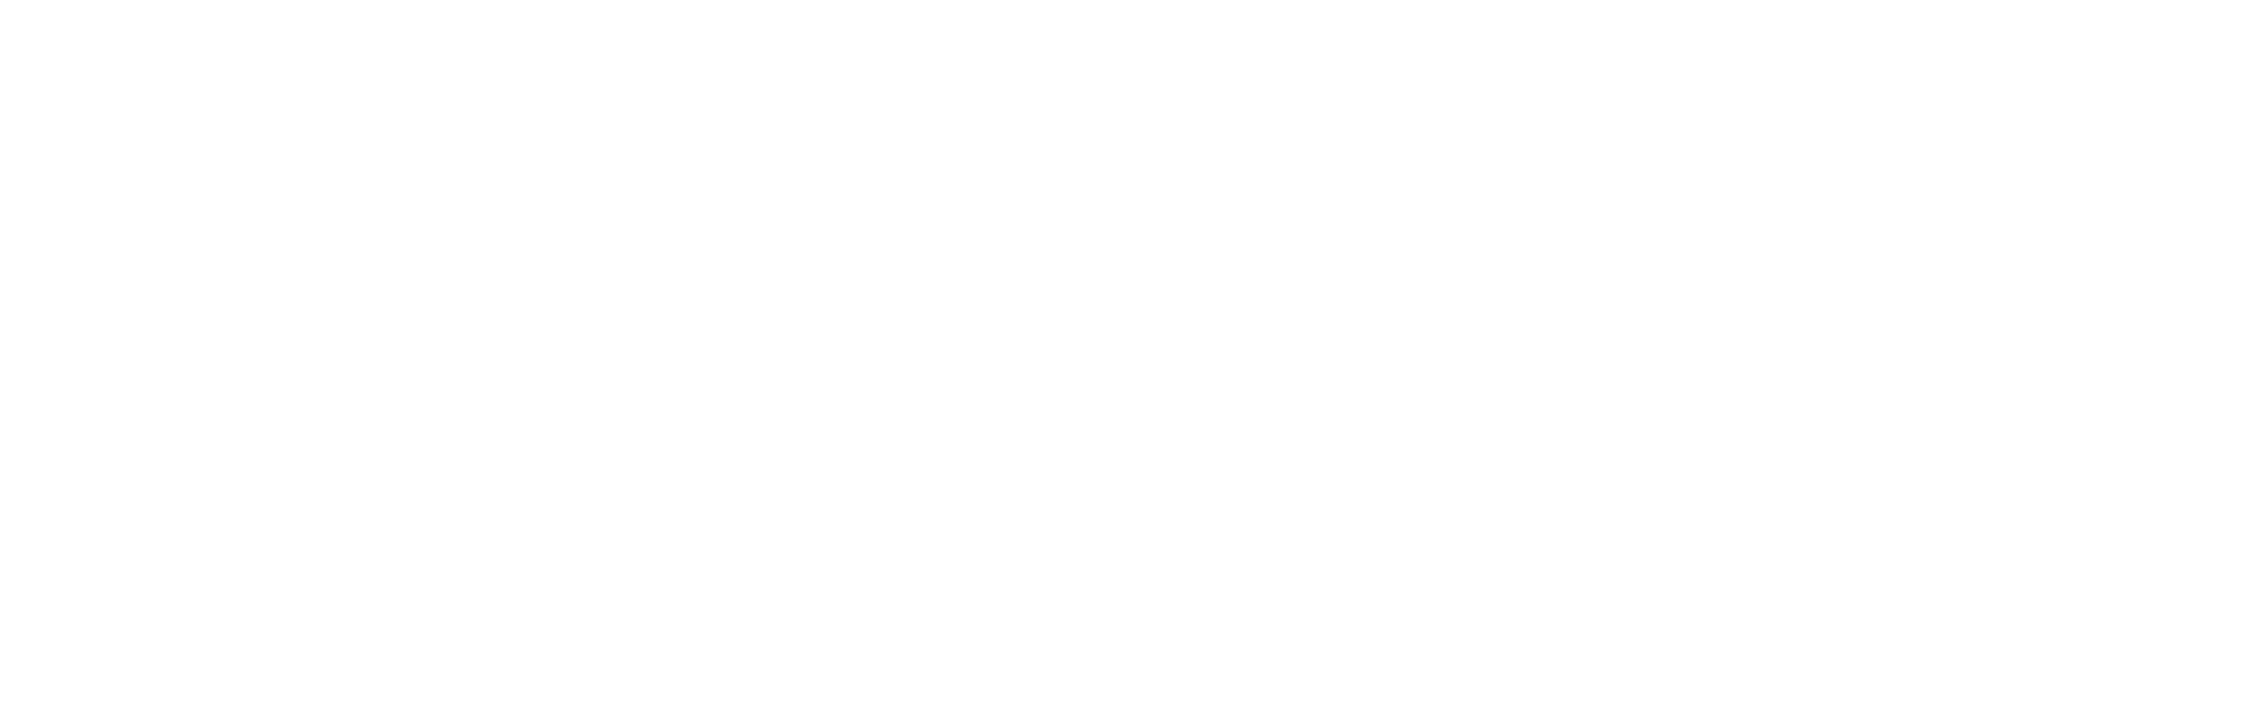 B.N.B Company Pvt. Ltd.